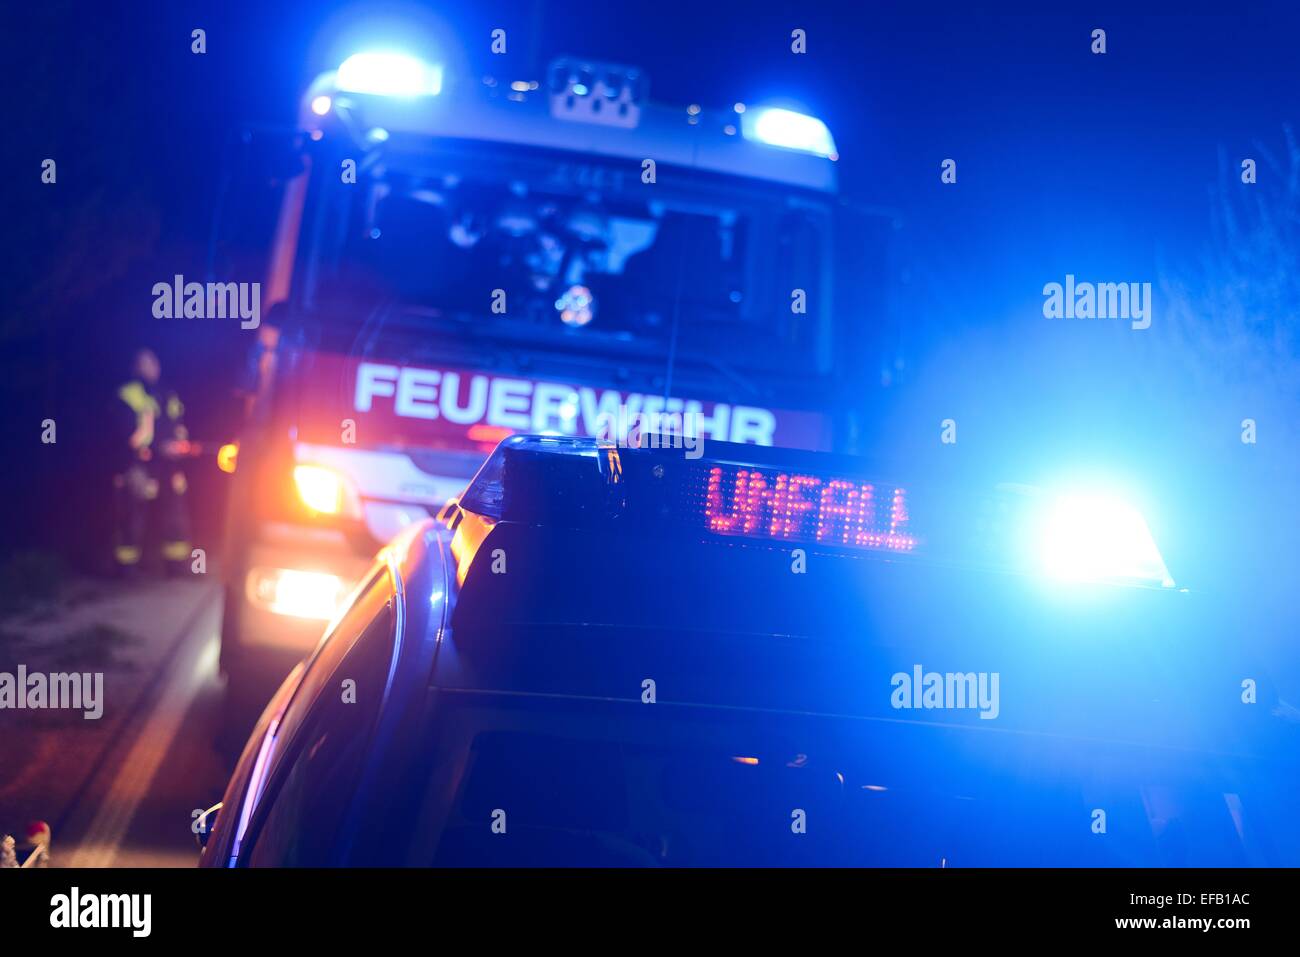 Feuerwehr und Polizei-Auto mit Blaulicht und die LED blinkt anzeigen  Unfall, Deutsch für Unfall, an einer Unfallstelle Stockfotografie -  Alamy